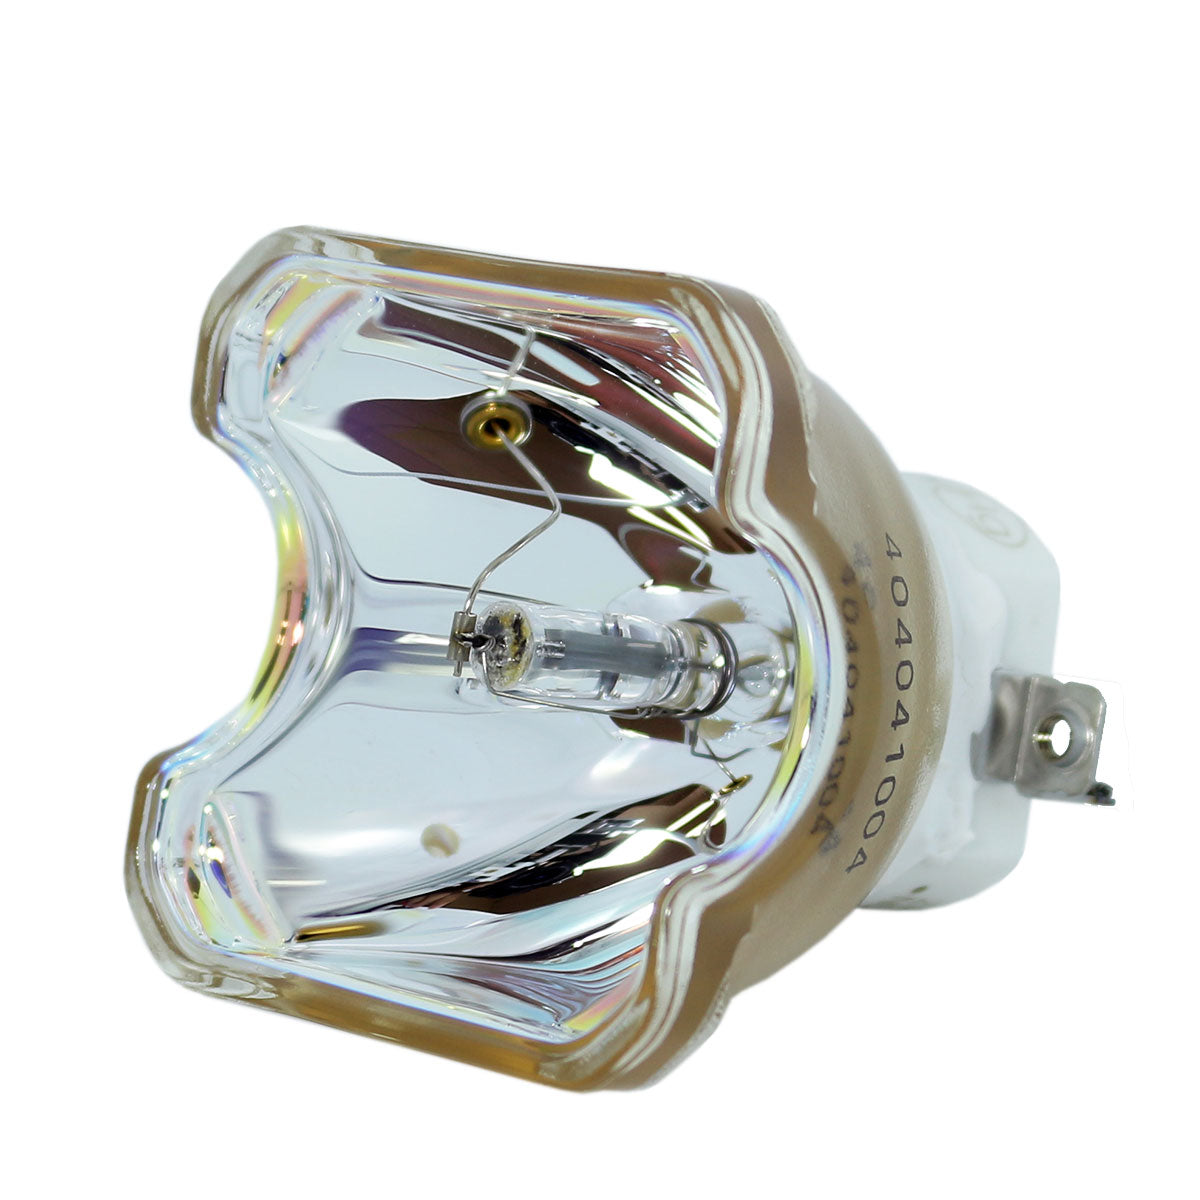 3M 78-6969-9947-9 Ushio Projector Bare Lamp